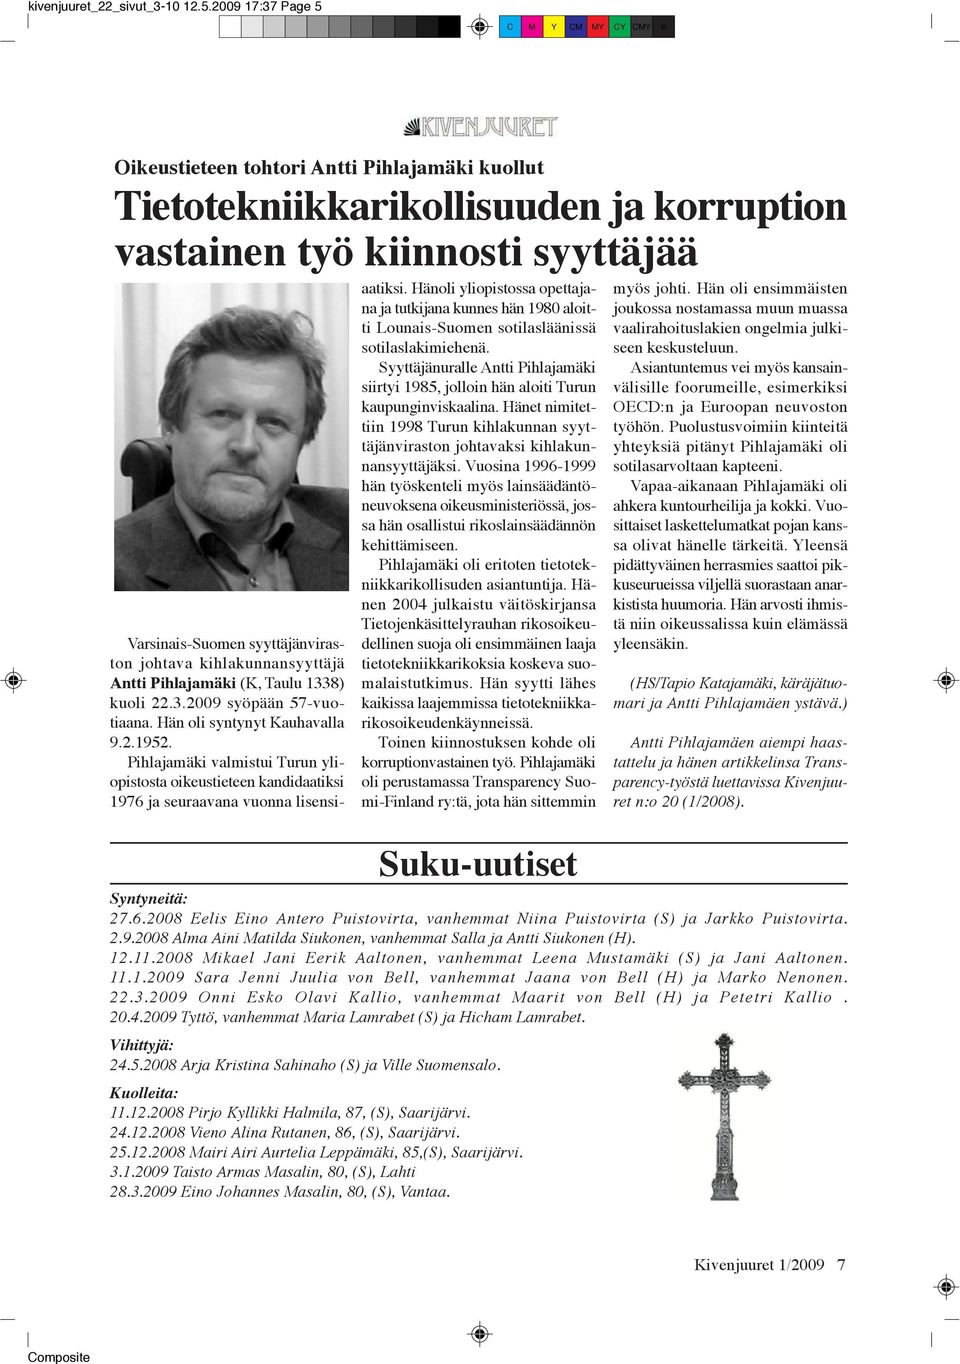 kihlakunnansyyttäjä Antti Pihlajamäki (K, Taulu 1338) kuoli 22.3.2009 syöpään 57-vuotiaana. Hän oli syntynyt Kauhavalla 9.2.1952.